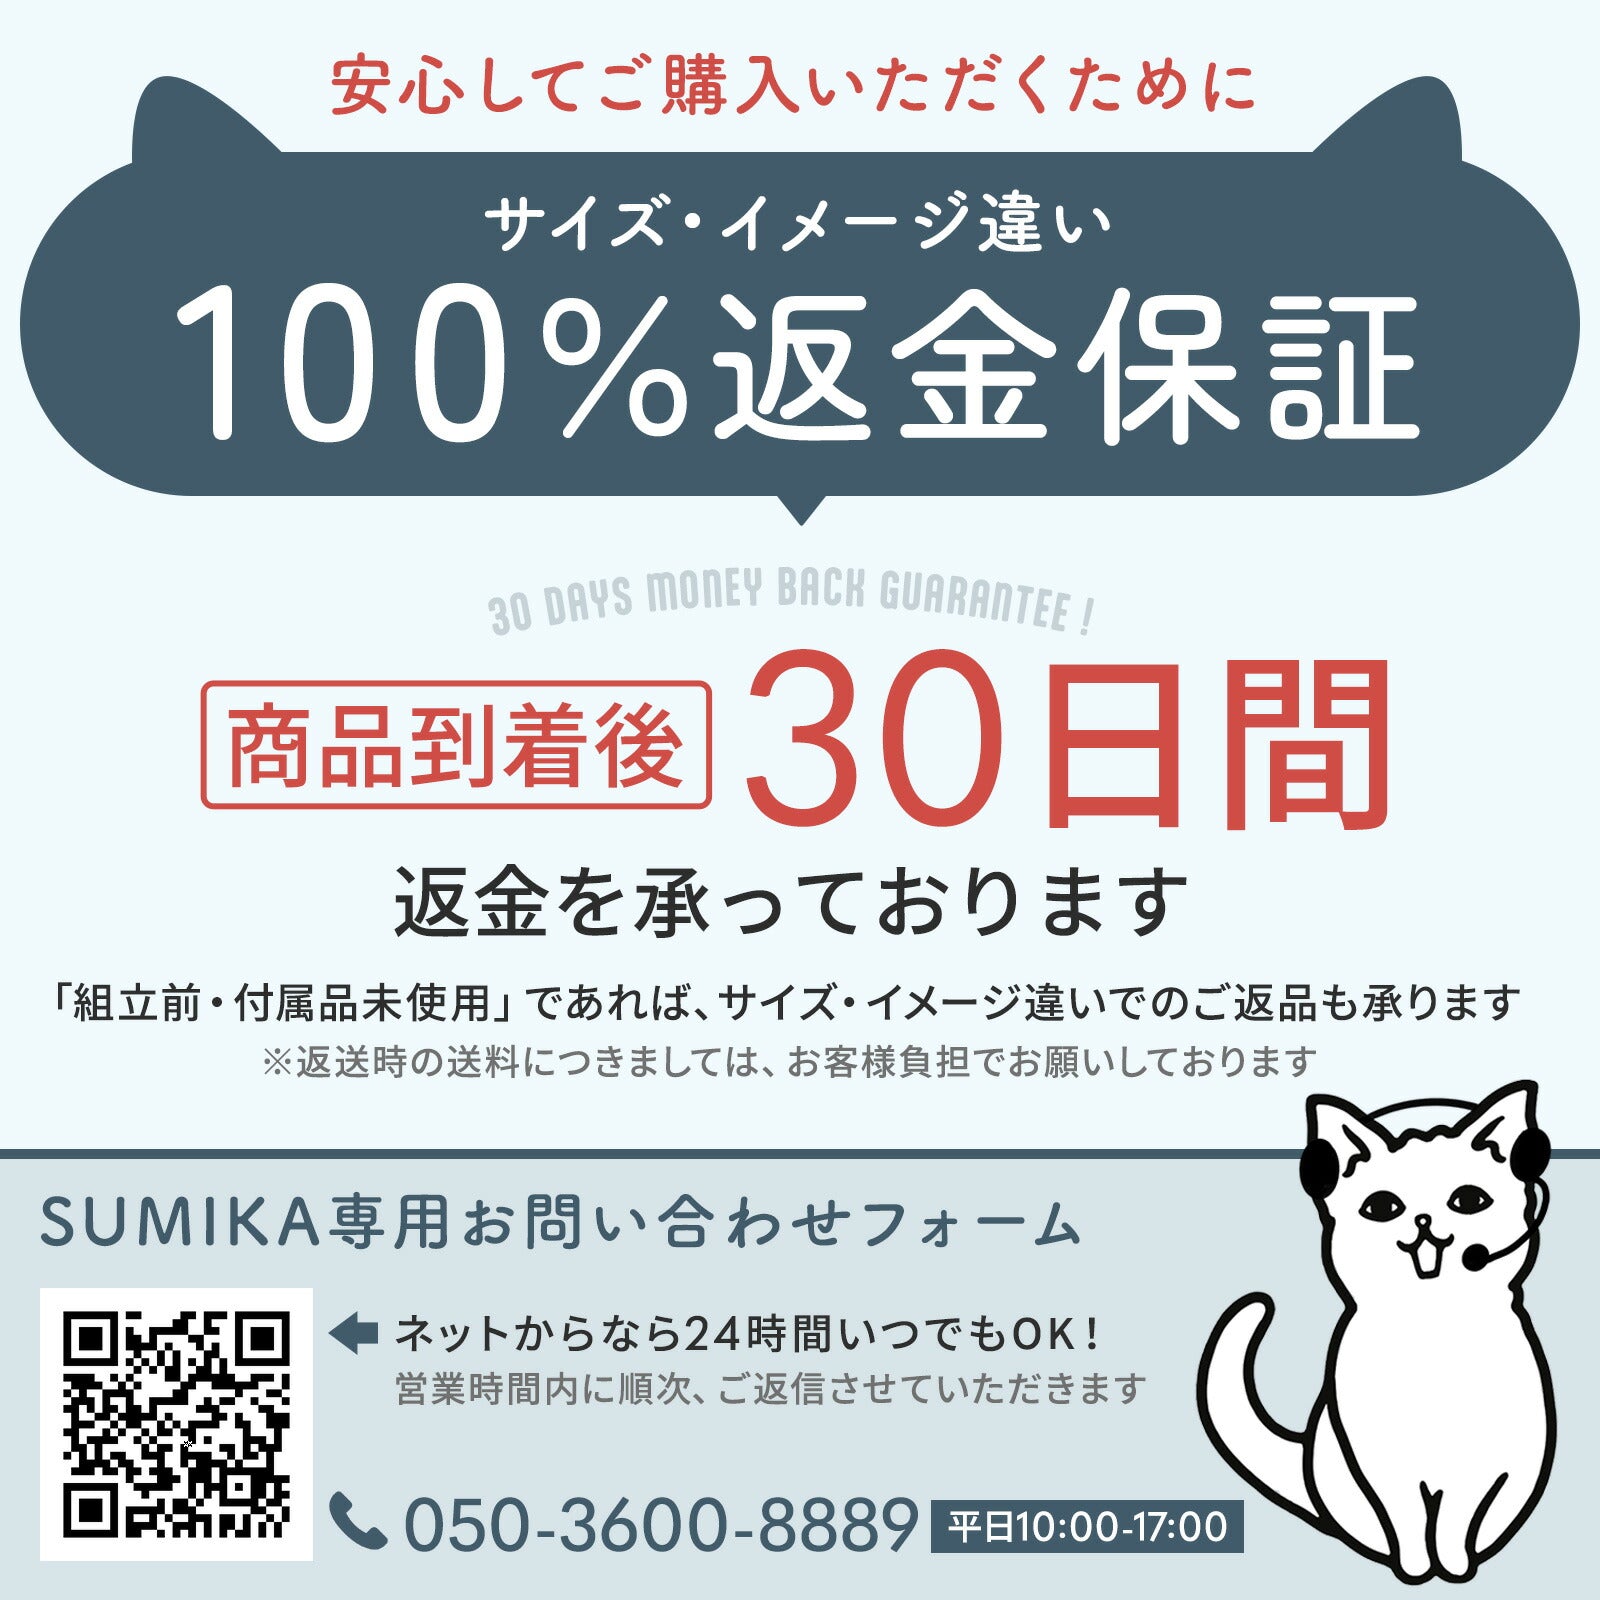 SUMIKA 電池式猫ちゃんおもちゃ「Cat'sbug! : キャッツバグ」3個セット インスタグラム